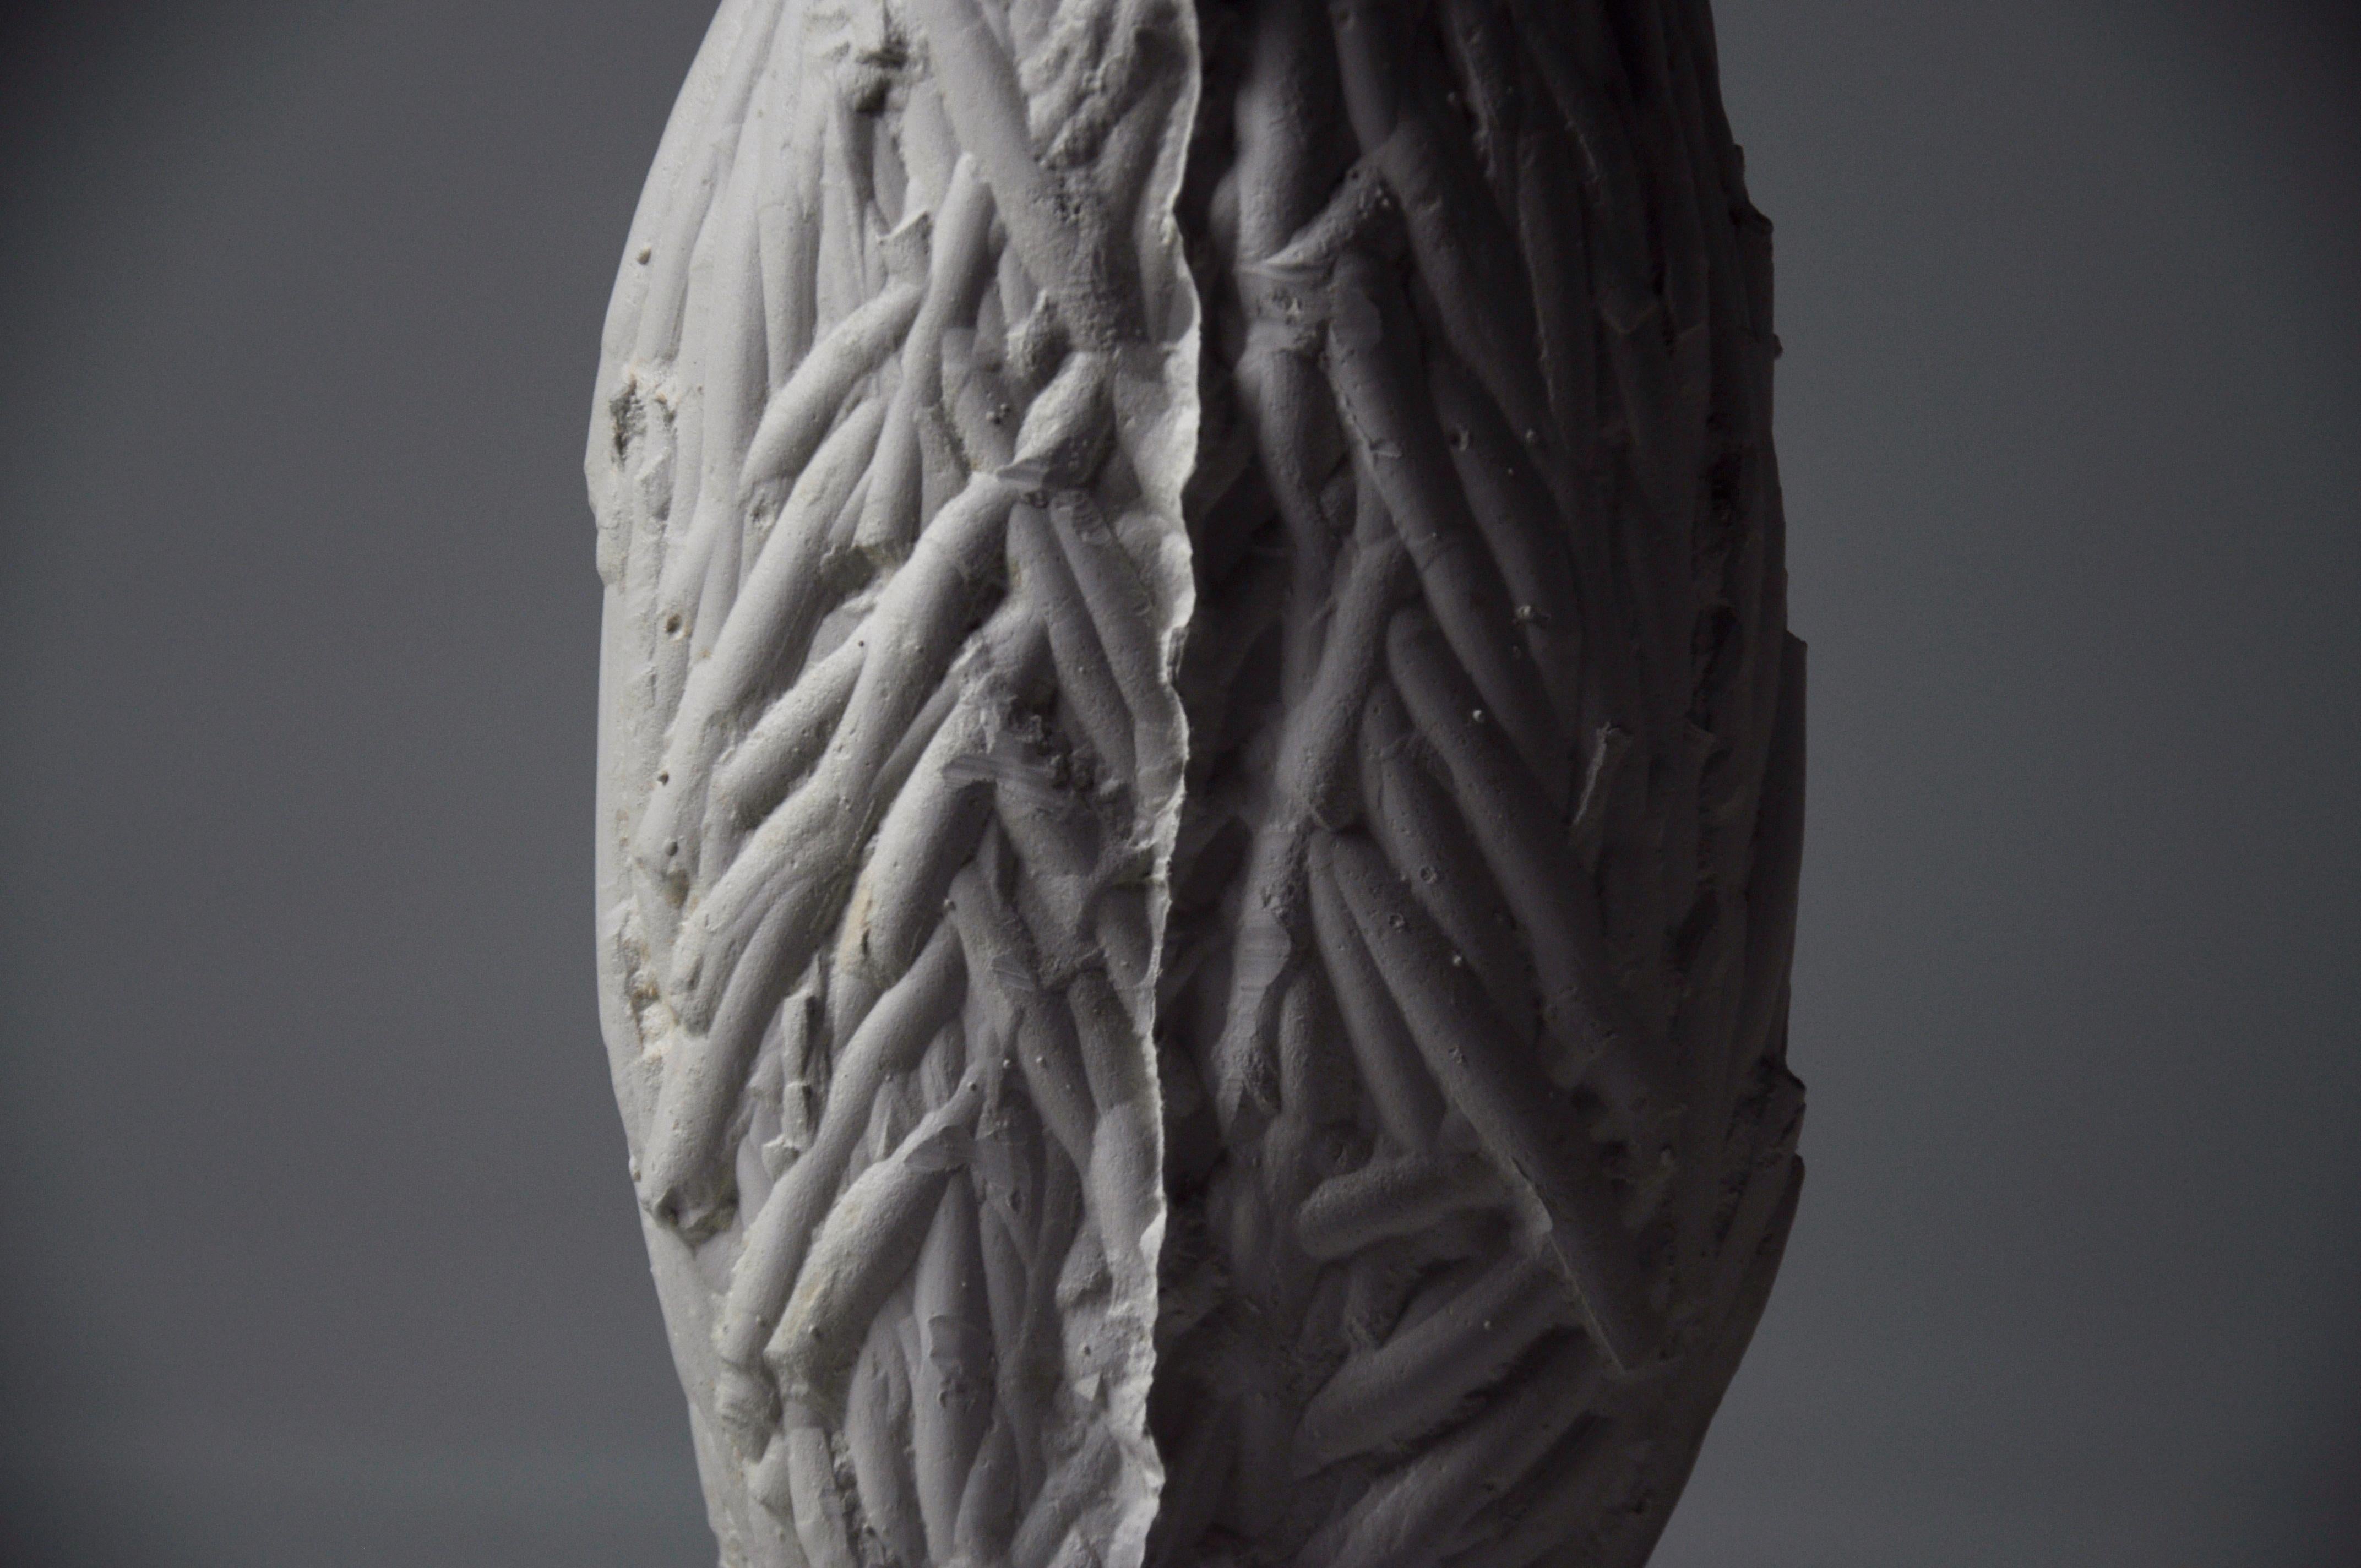 Eine keramische Kollektion von skulpturalen, funktionalen Objekten, inspiriert von der Parallele zwischen dem Prozess des Keramikgießens und dem Wachstum und Verfall organischer Wesen.
Durch das Experimentieren mit verschiedenen Arten von